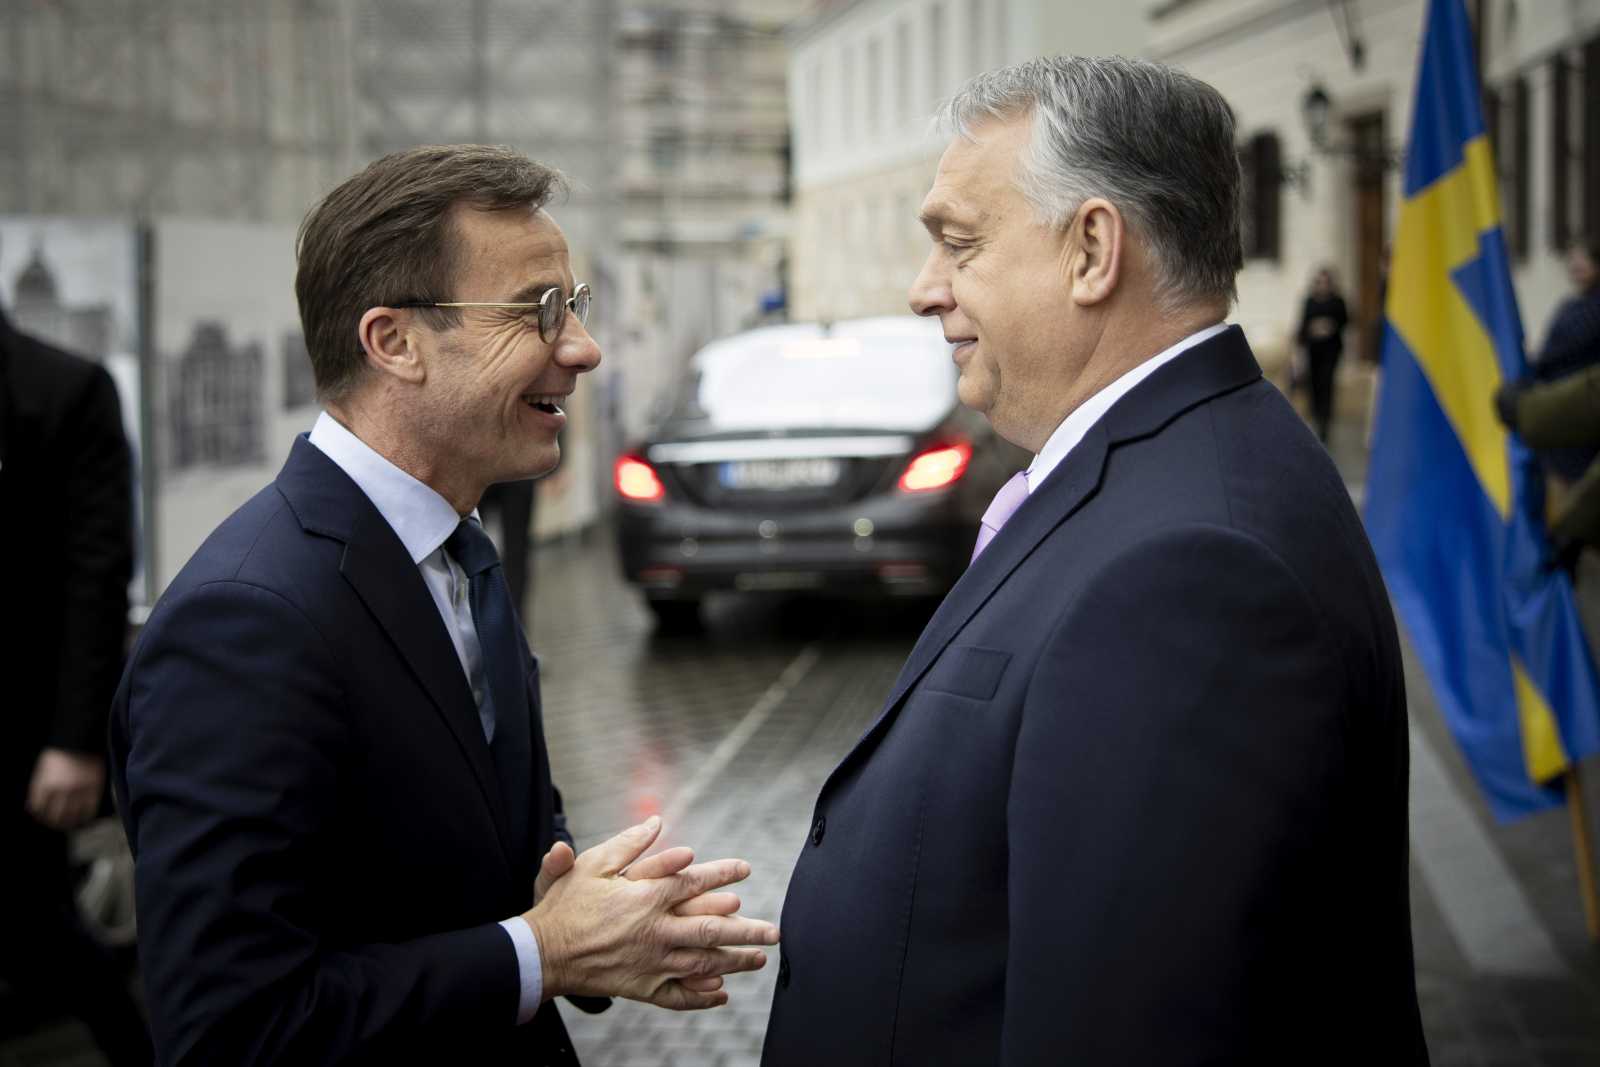 Ulf Kristersson és Orbán Viktor a budapesti tárgyalások előtt Fotó: MTI